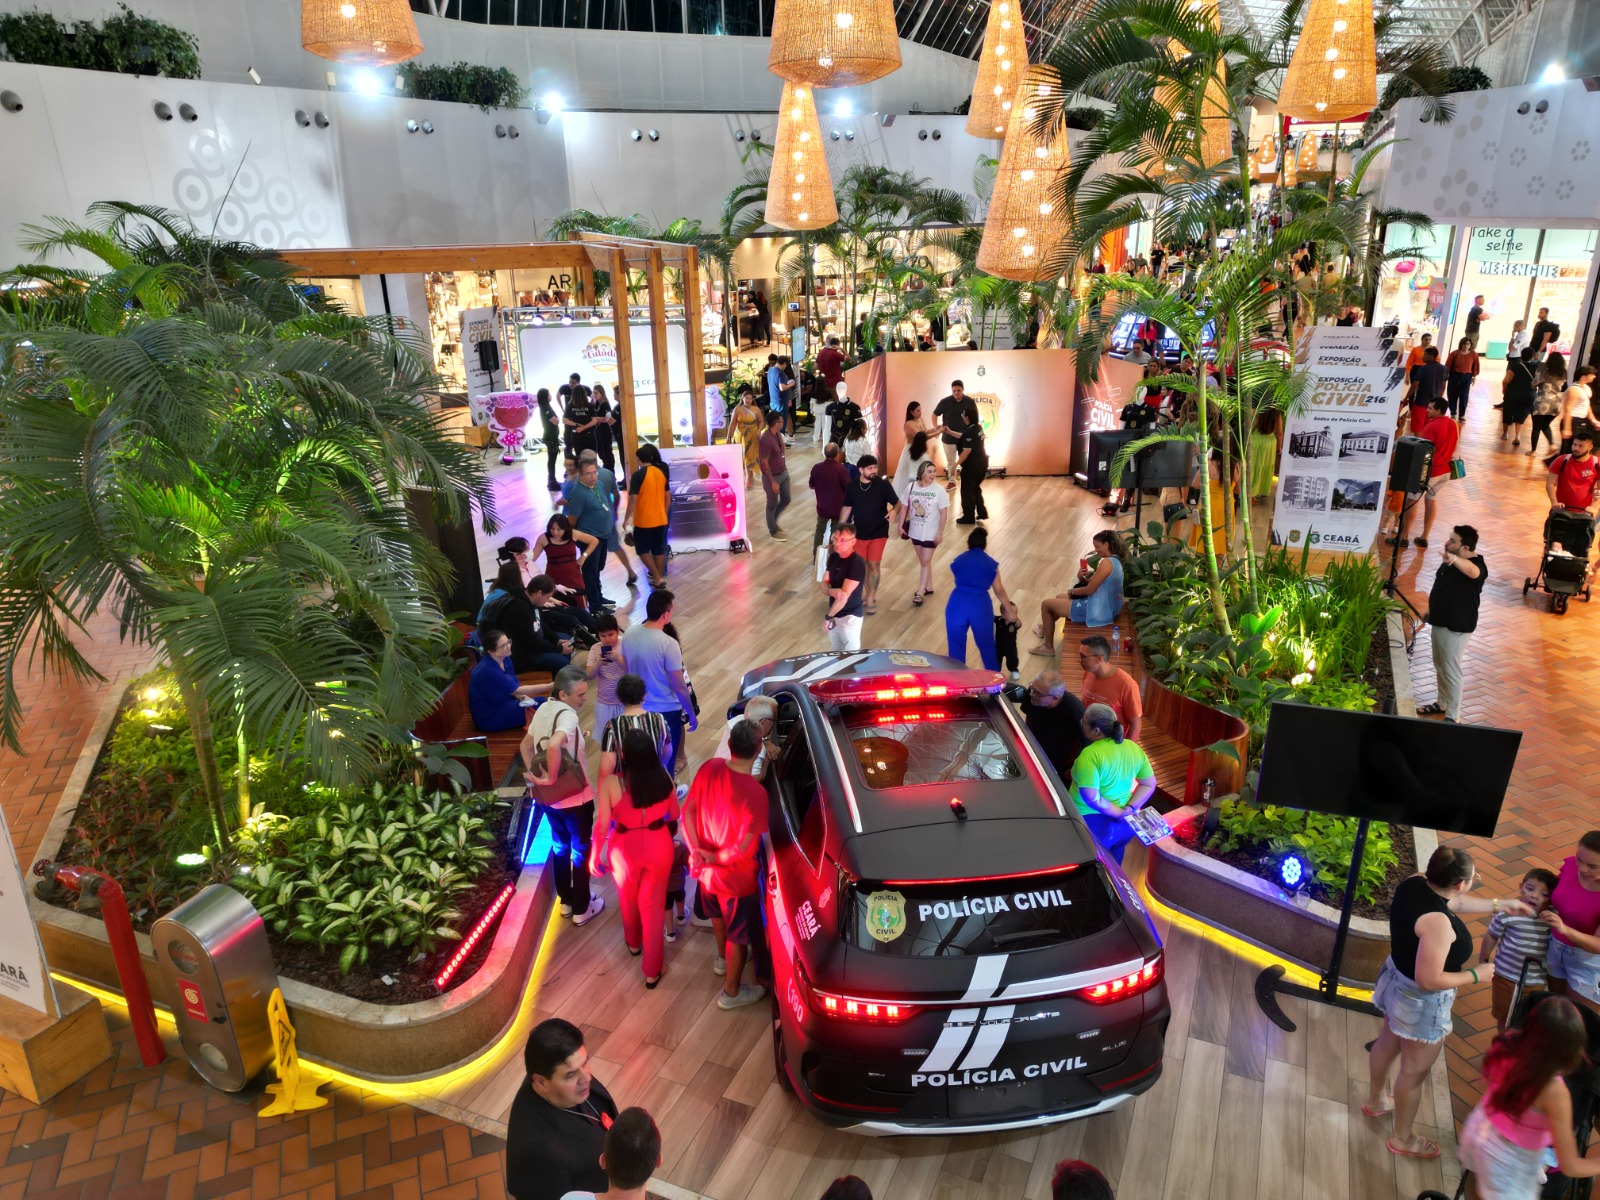 PCCE promove exposição celebrativa de seus 216 anos com automóveis, realidade virtual, espetáculos infantis e serviço em shopping da Capital